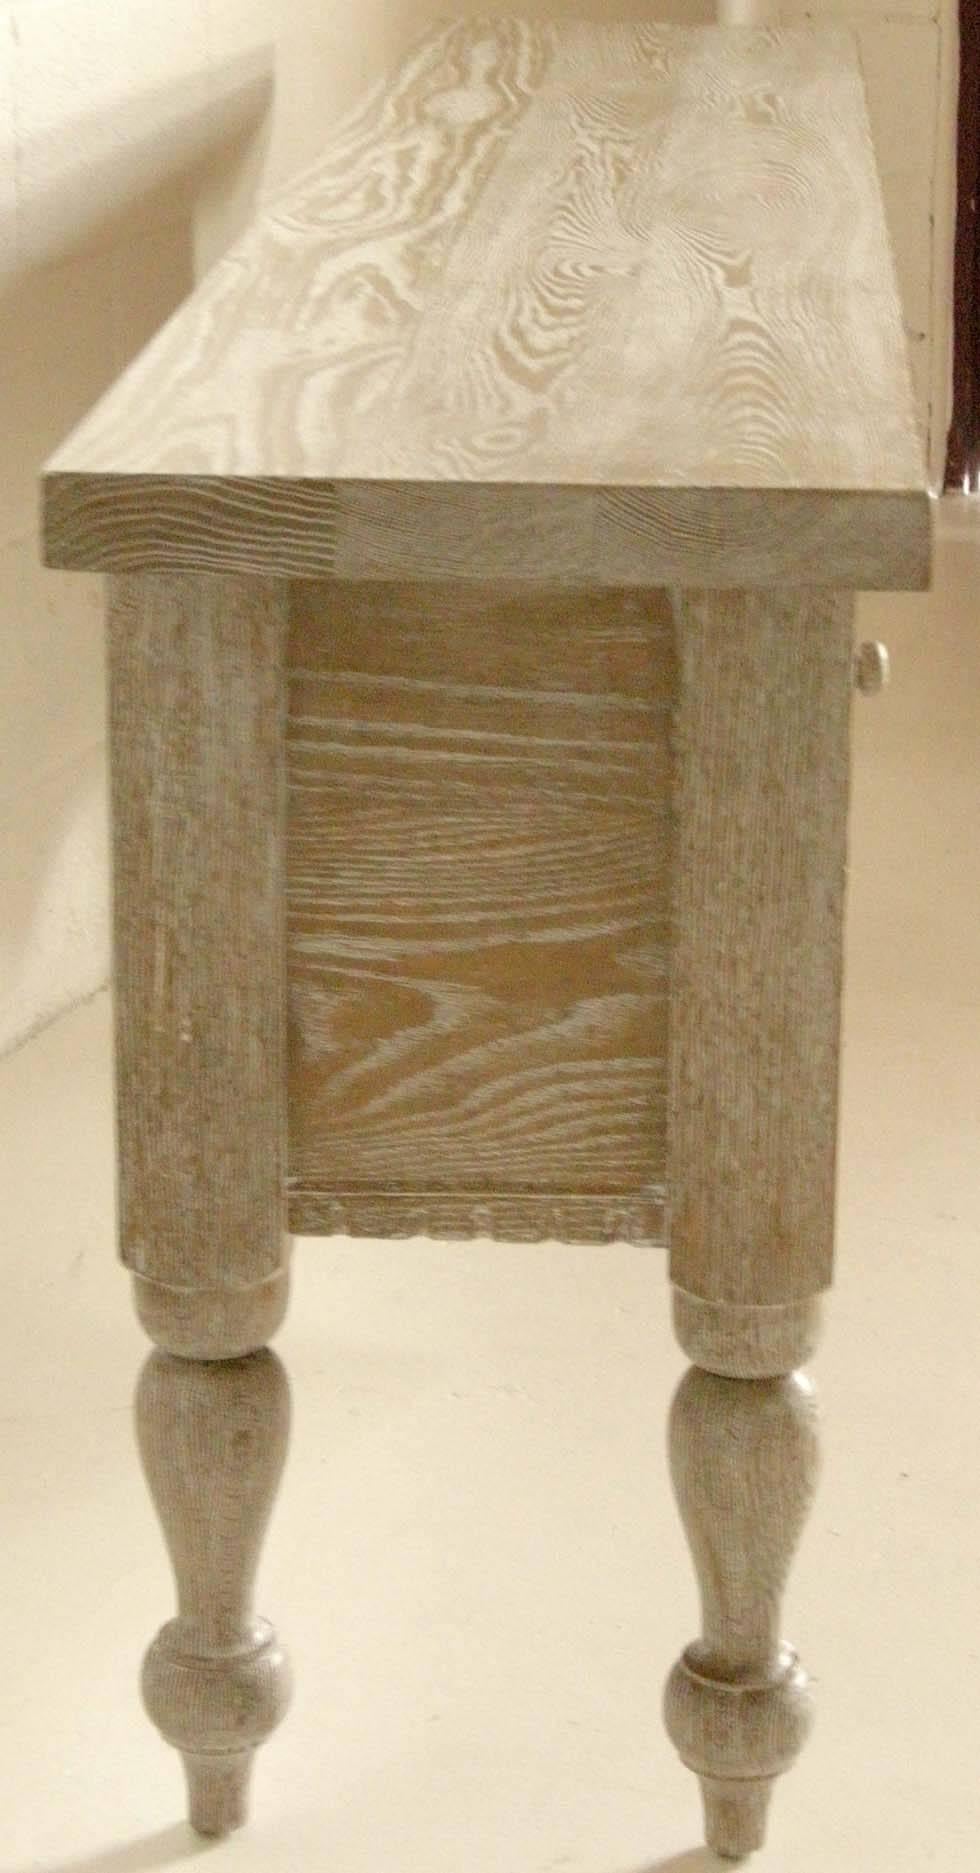 Américain Console en bois de chêne cérusé avec pieds et tiroirs tournés, réalisée sur mesure par Dos Gallos en vente